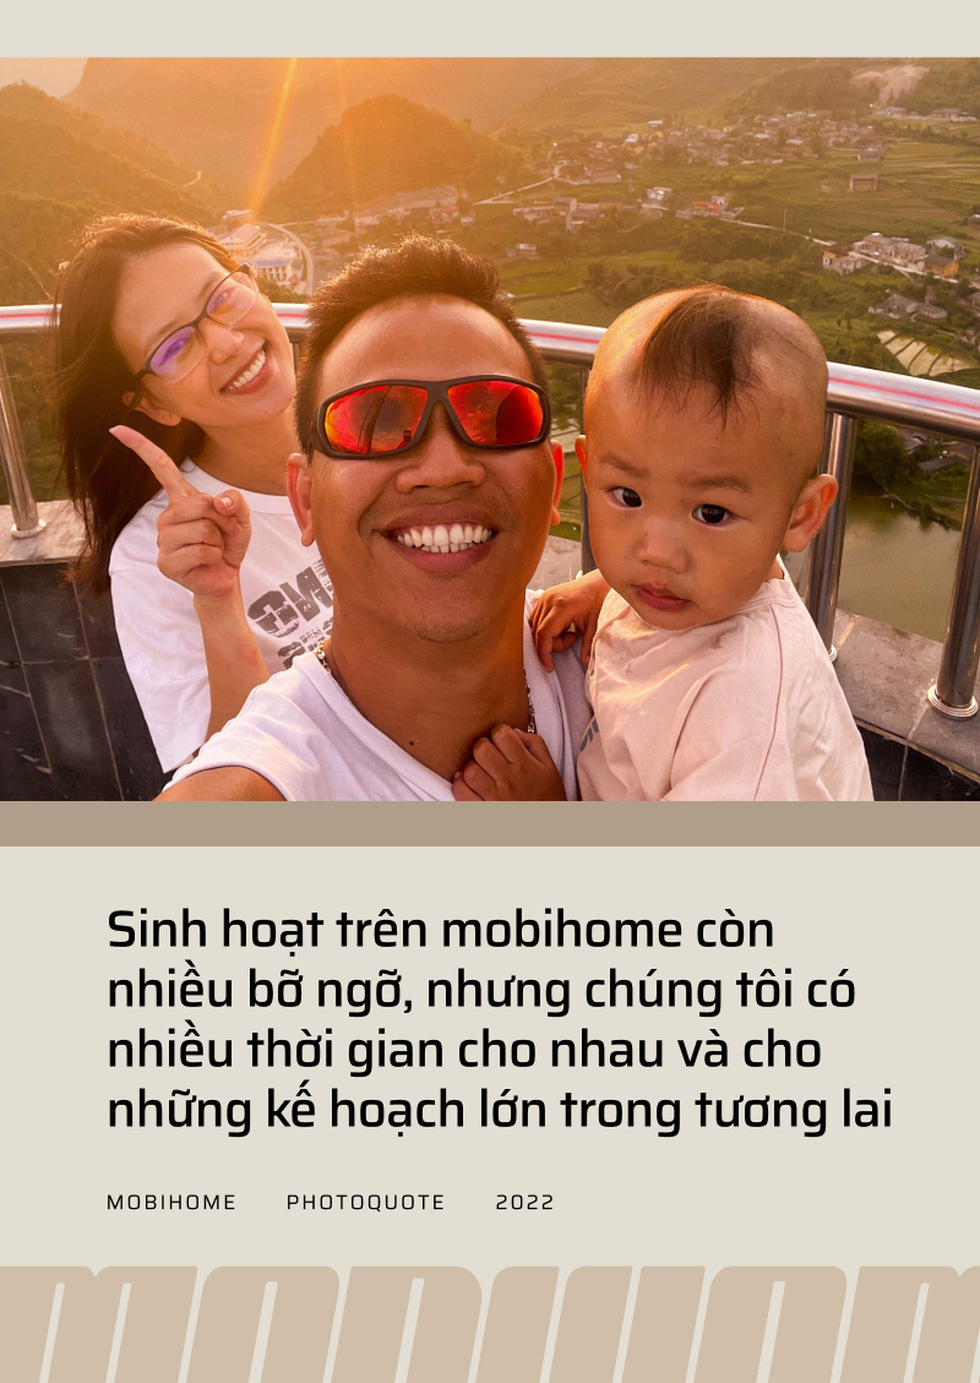 8X Sài Gòn chế mobihome từ Hyundai Solati, đưa vợ bầu, con nhỏ đi xuyên Việt - Ảnh 3.